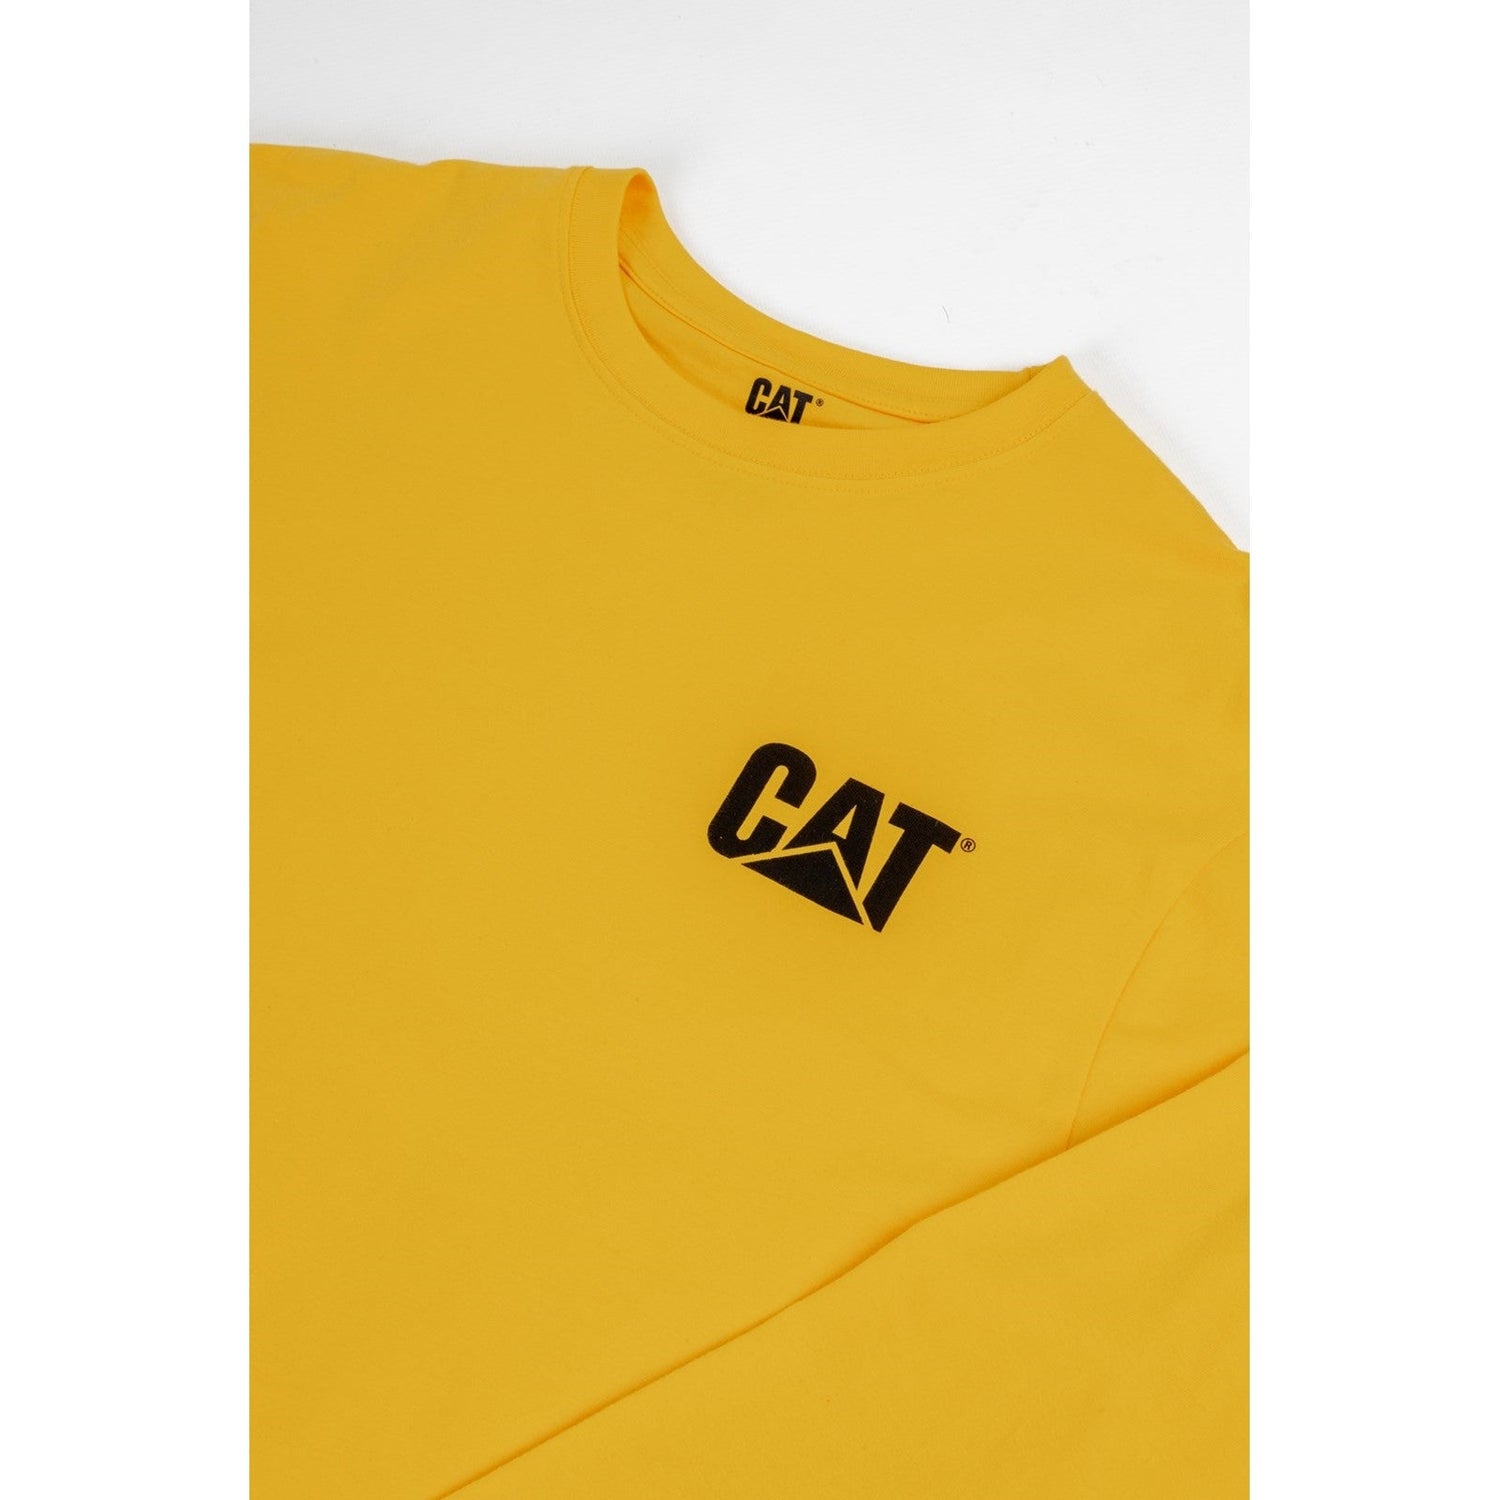 Caterpillar Trademark Banner Long Sleeve T Shirt in Yellow 